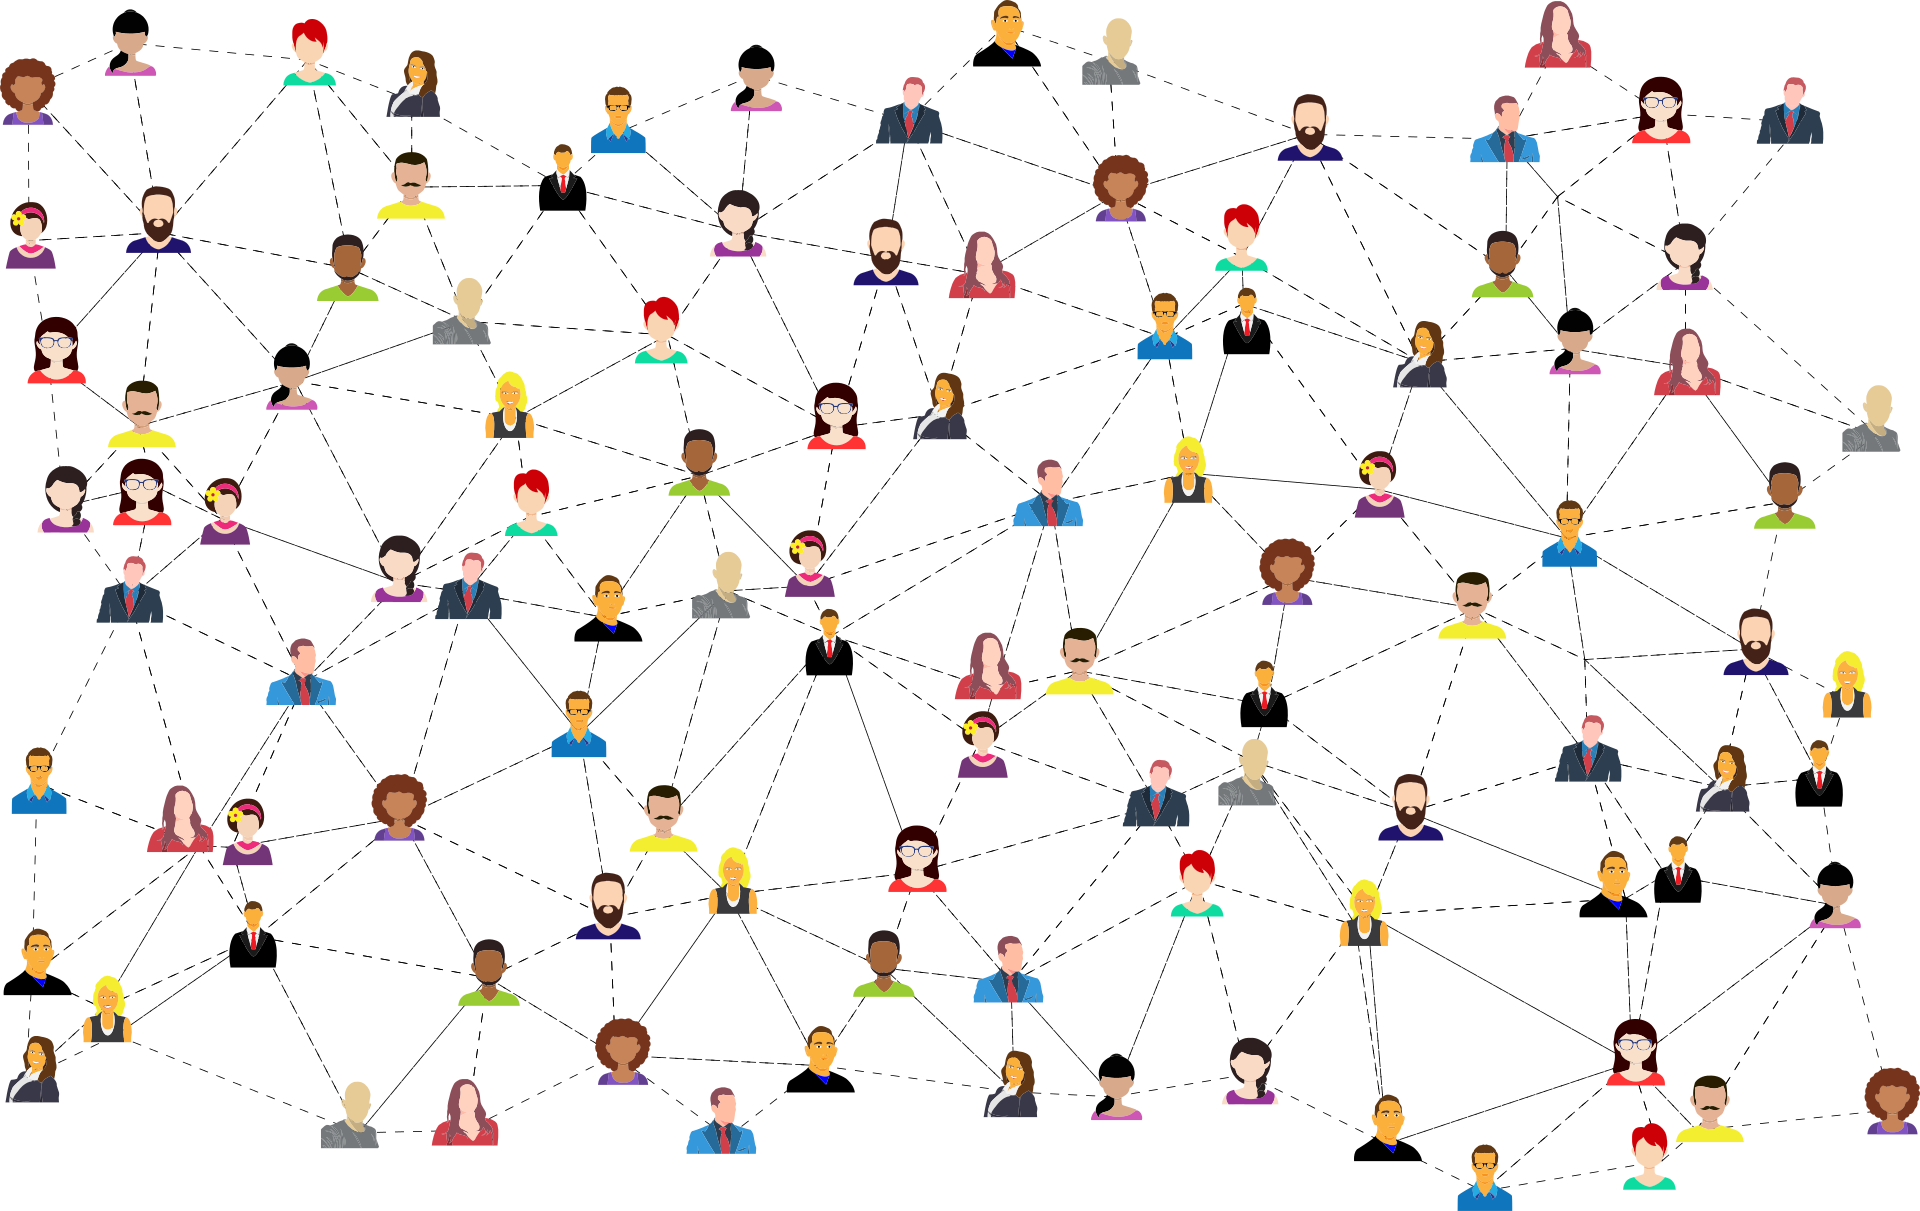 People - Courtesy of Gordon Johnson - Pixabay